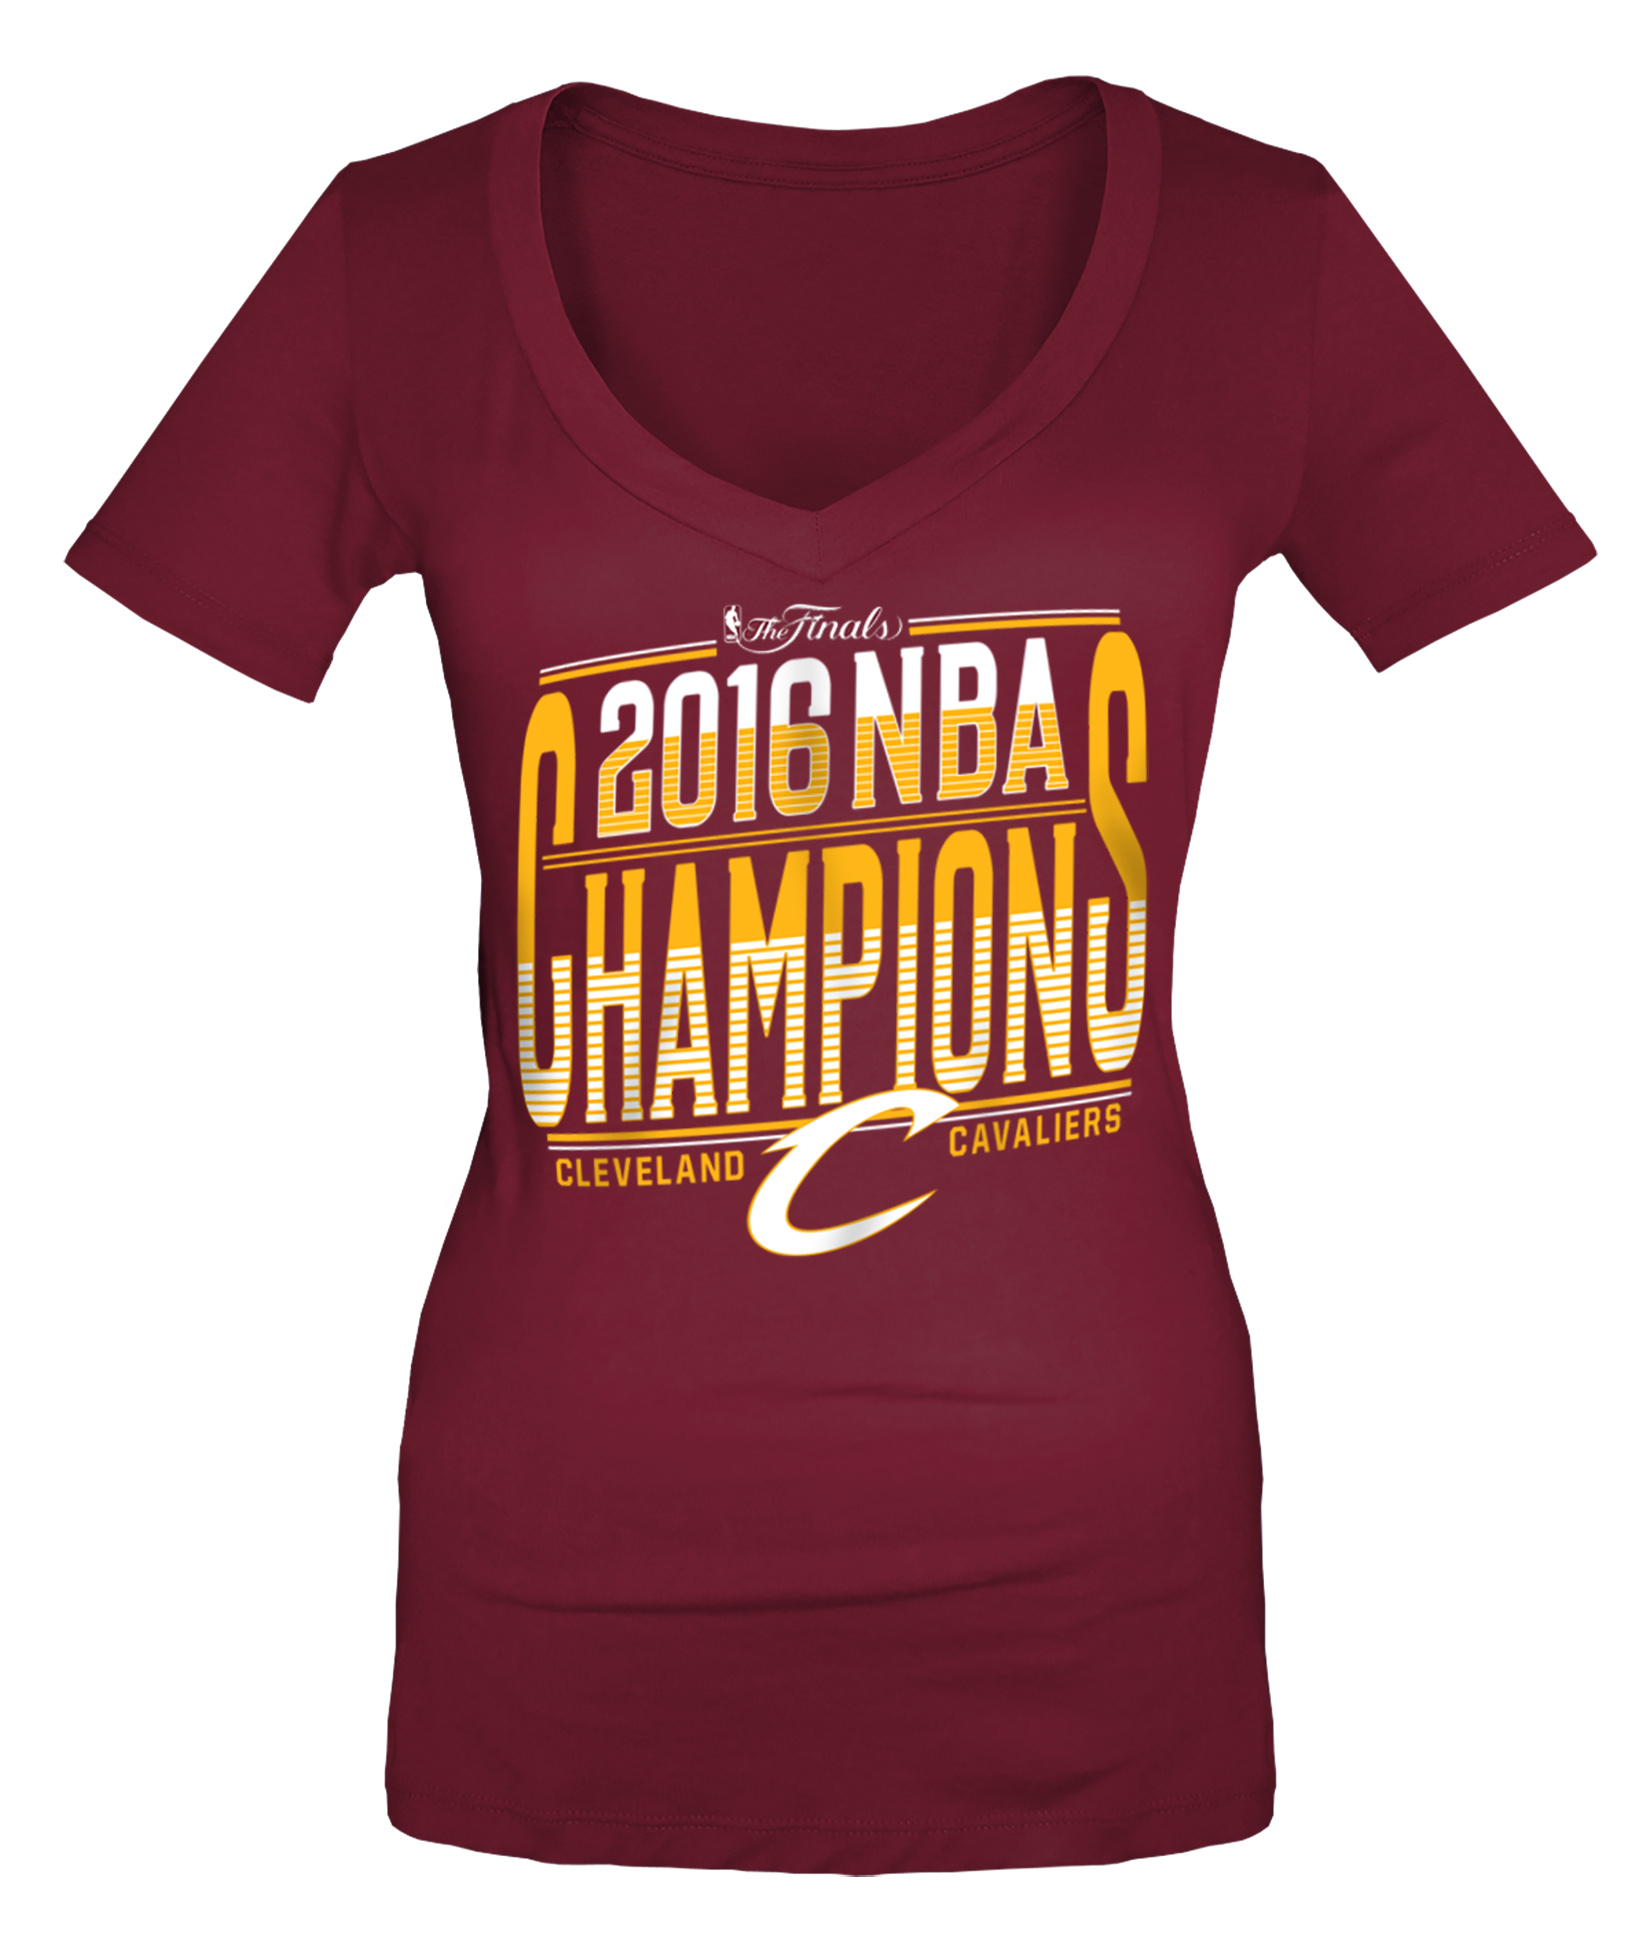 NBA(CANONICAL) Finals 2016 Women's T-Shirt &#8211; Cleveland Cavaliers